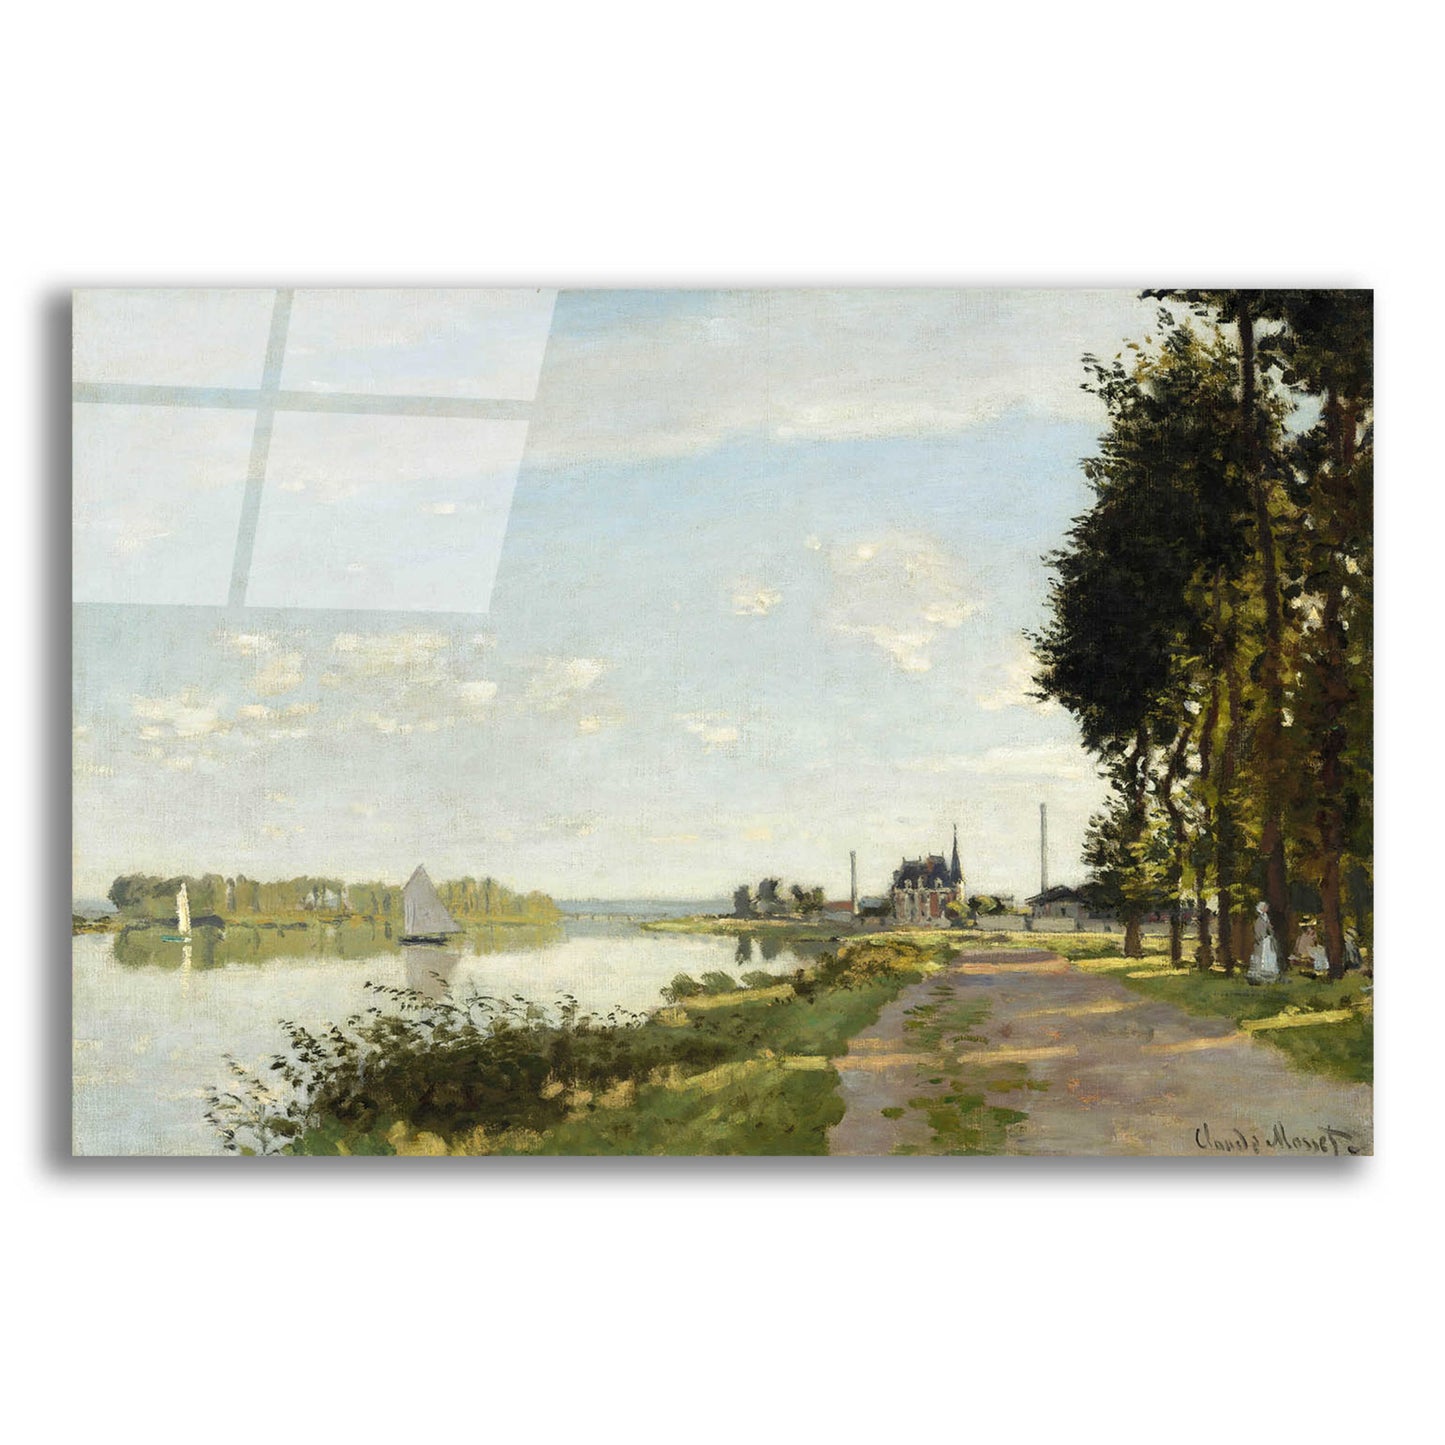 Epic Art 'Argenteuil' by Claude Monet, Acrylic Glass Wall Art,16x12